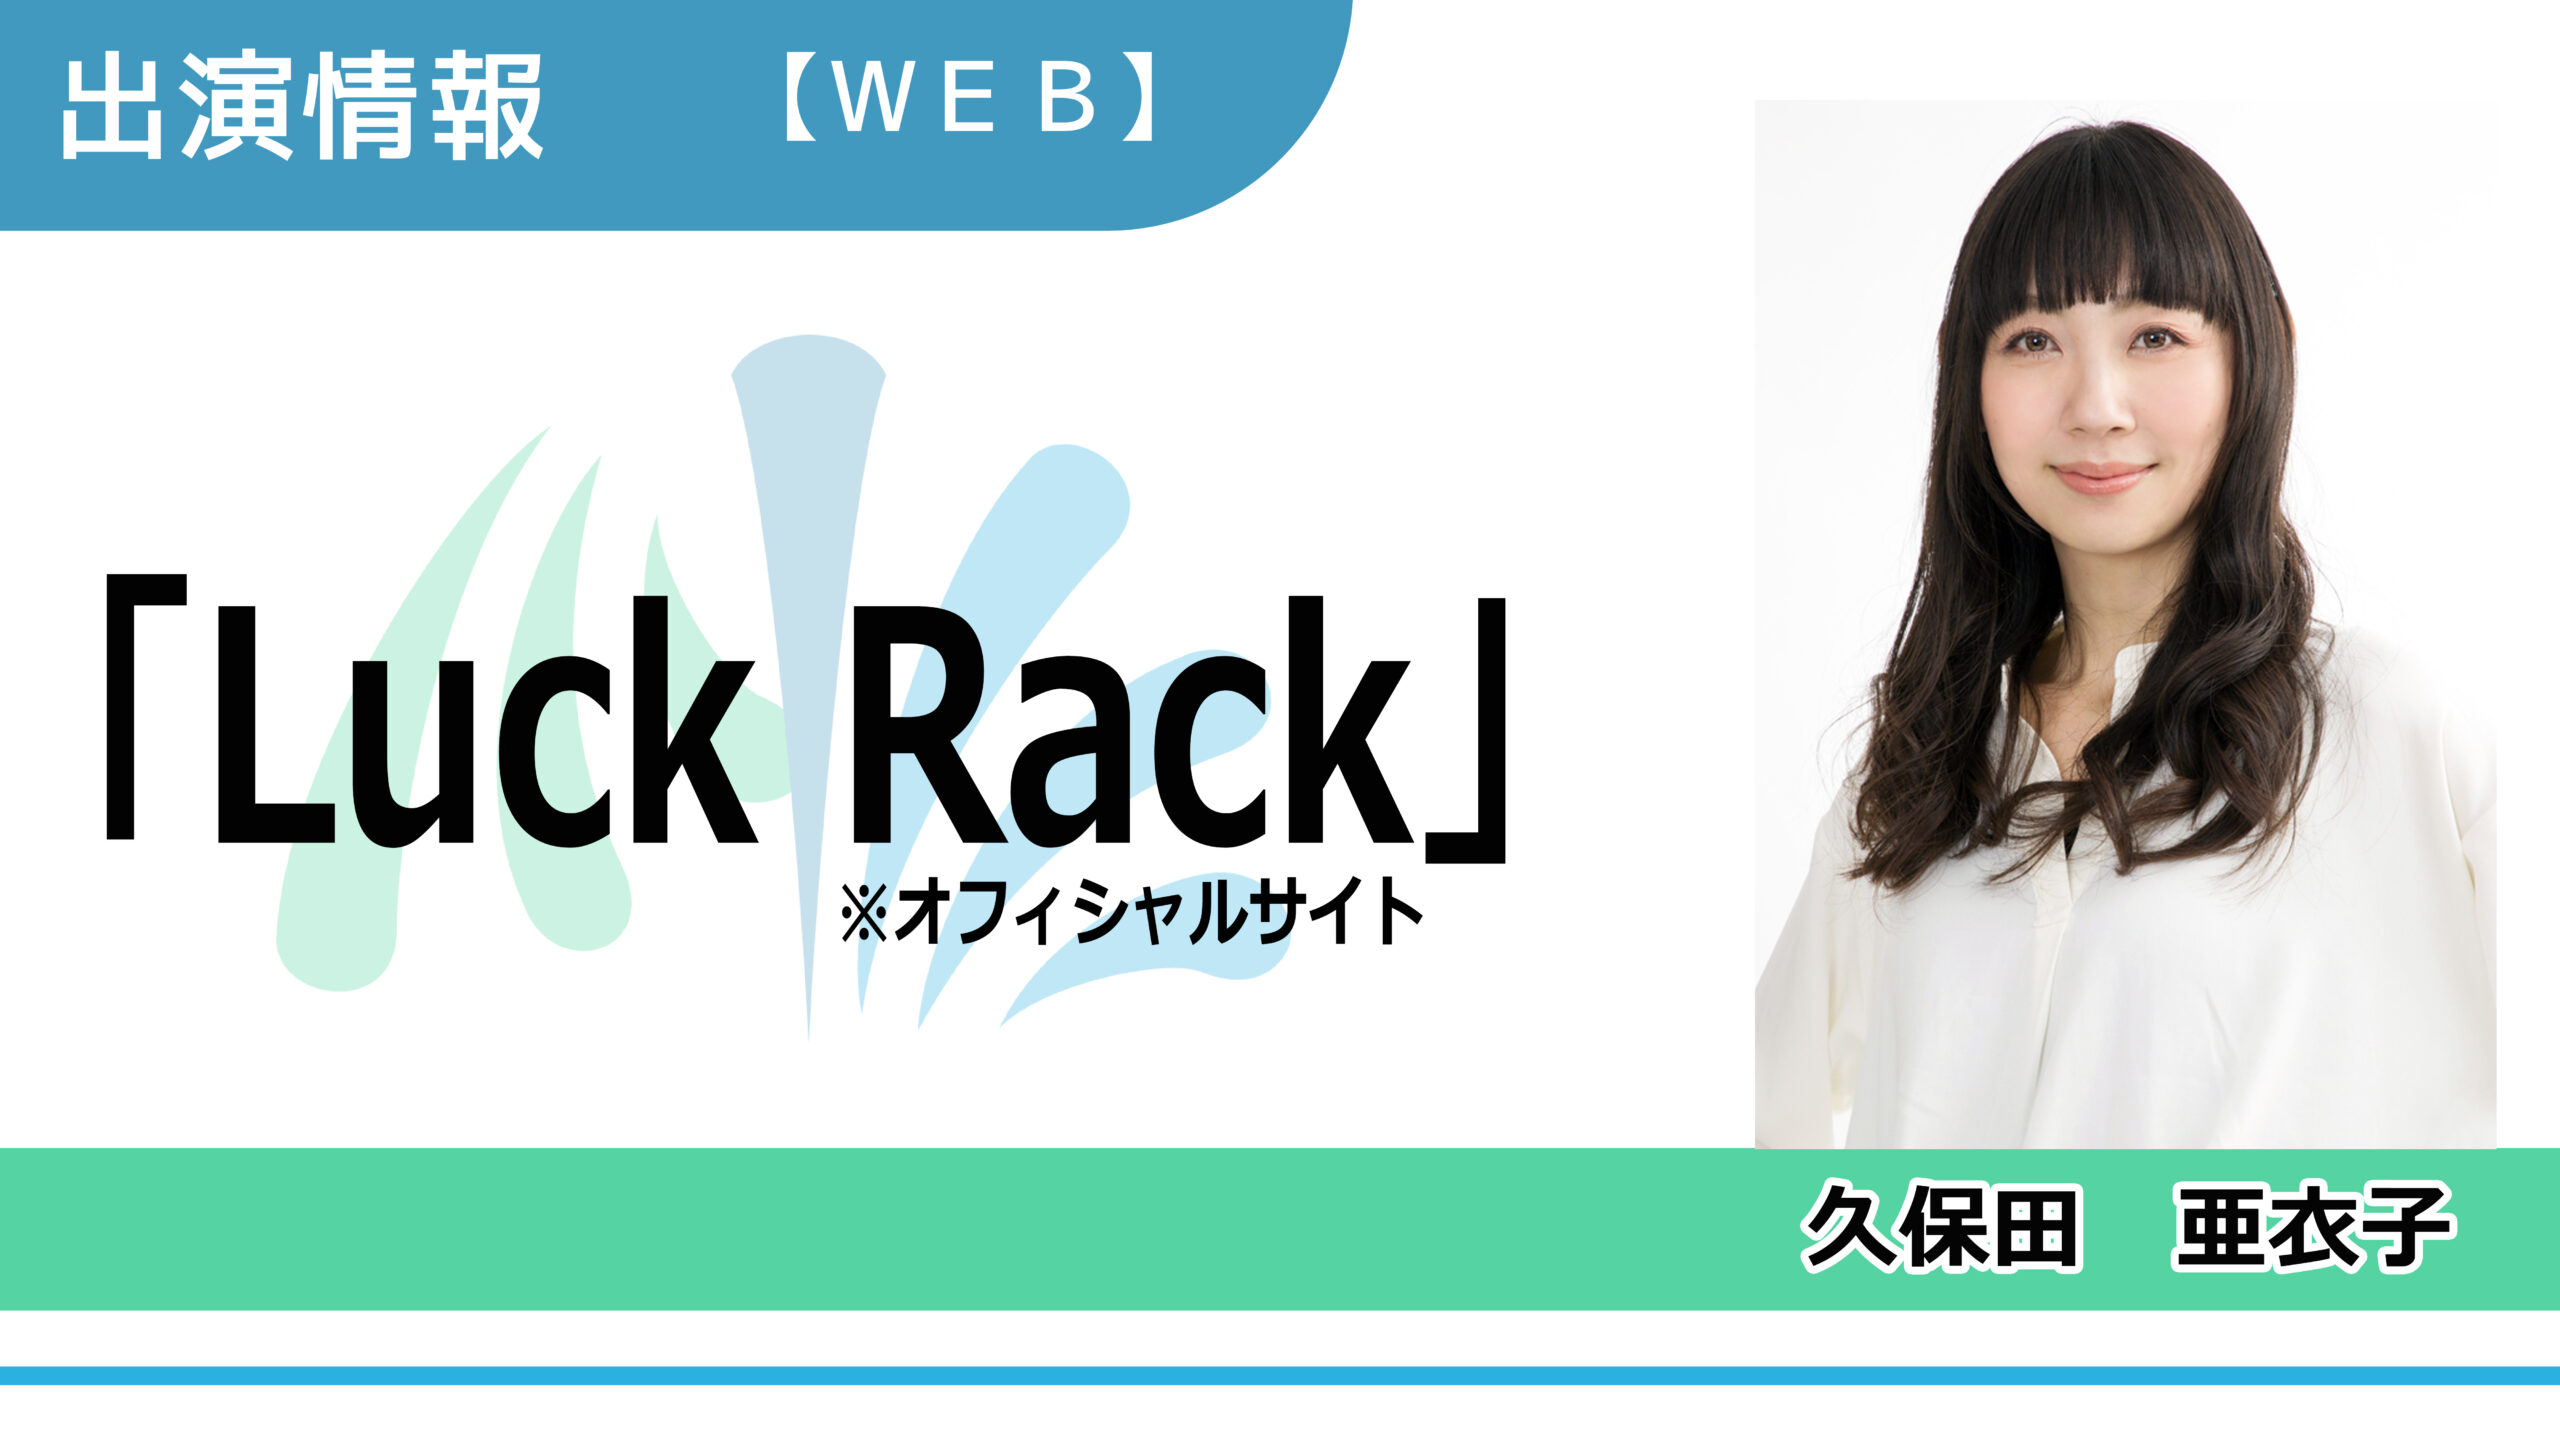 【出演情報】久保田亜衣子 / 「Luck Rack（オフィシャルサイト）」出演